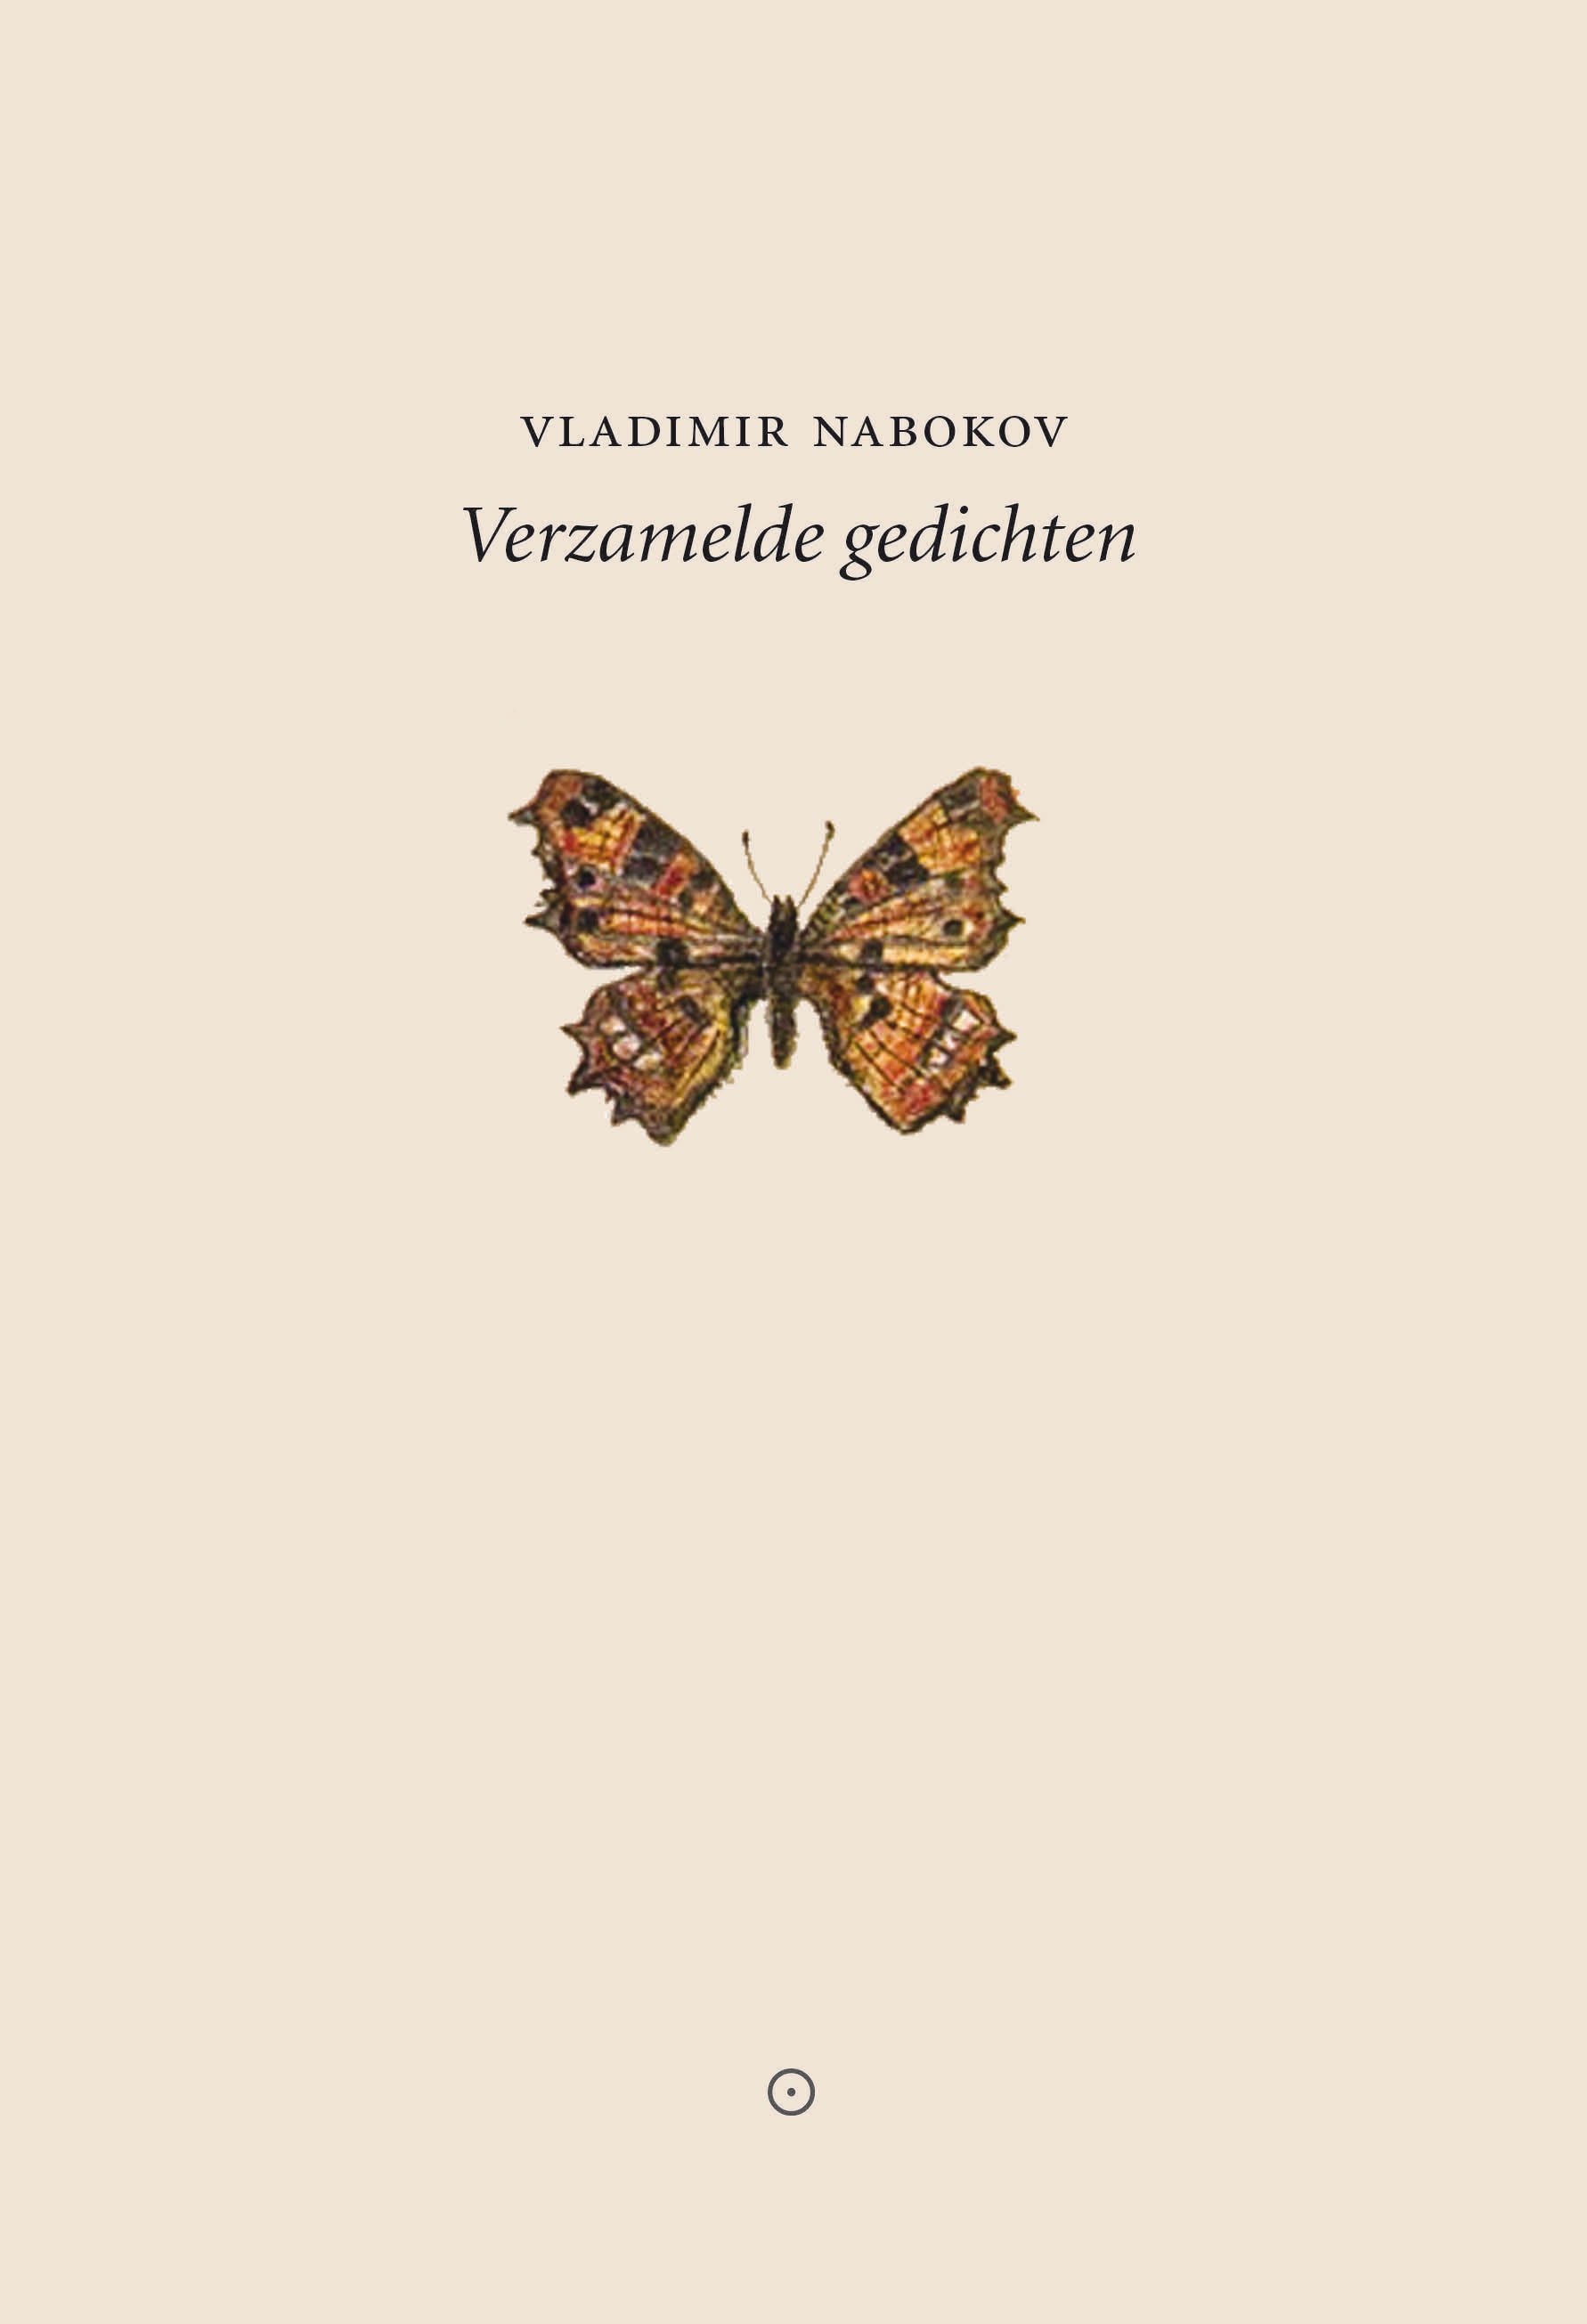 Een vlinder moest de omslag worden van Vladimir Nabokovs gedichten